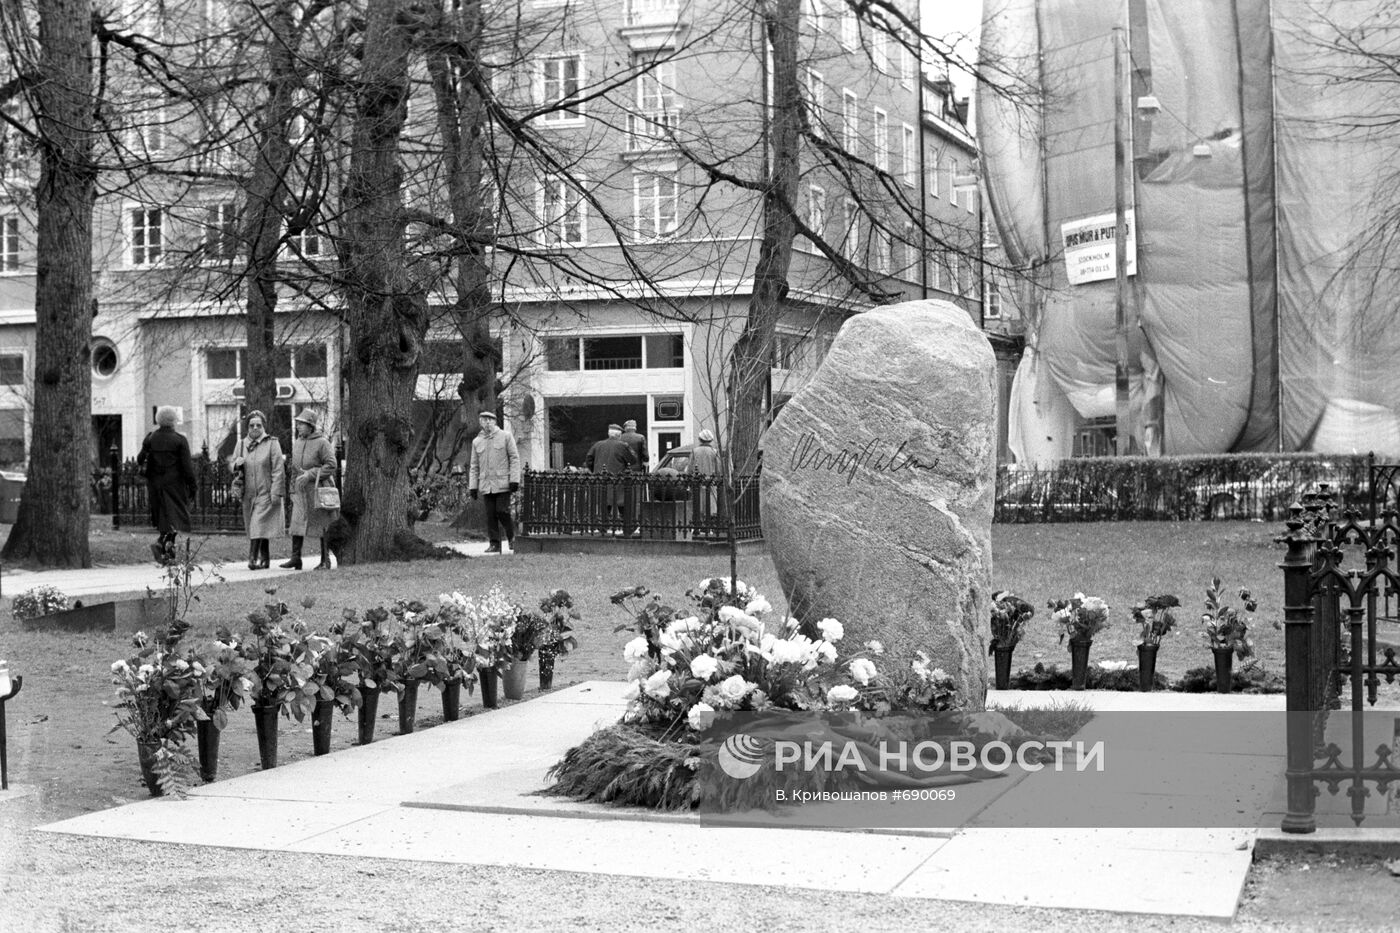 Памятник на могиле премьер-министра Швеции Улофа Пальме